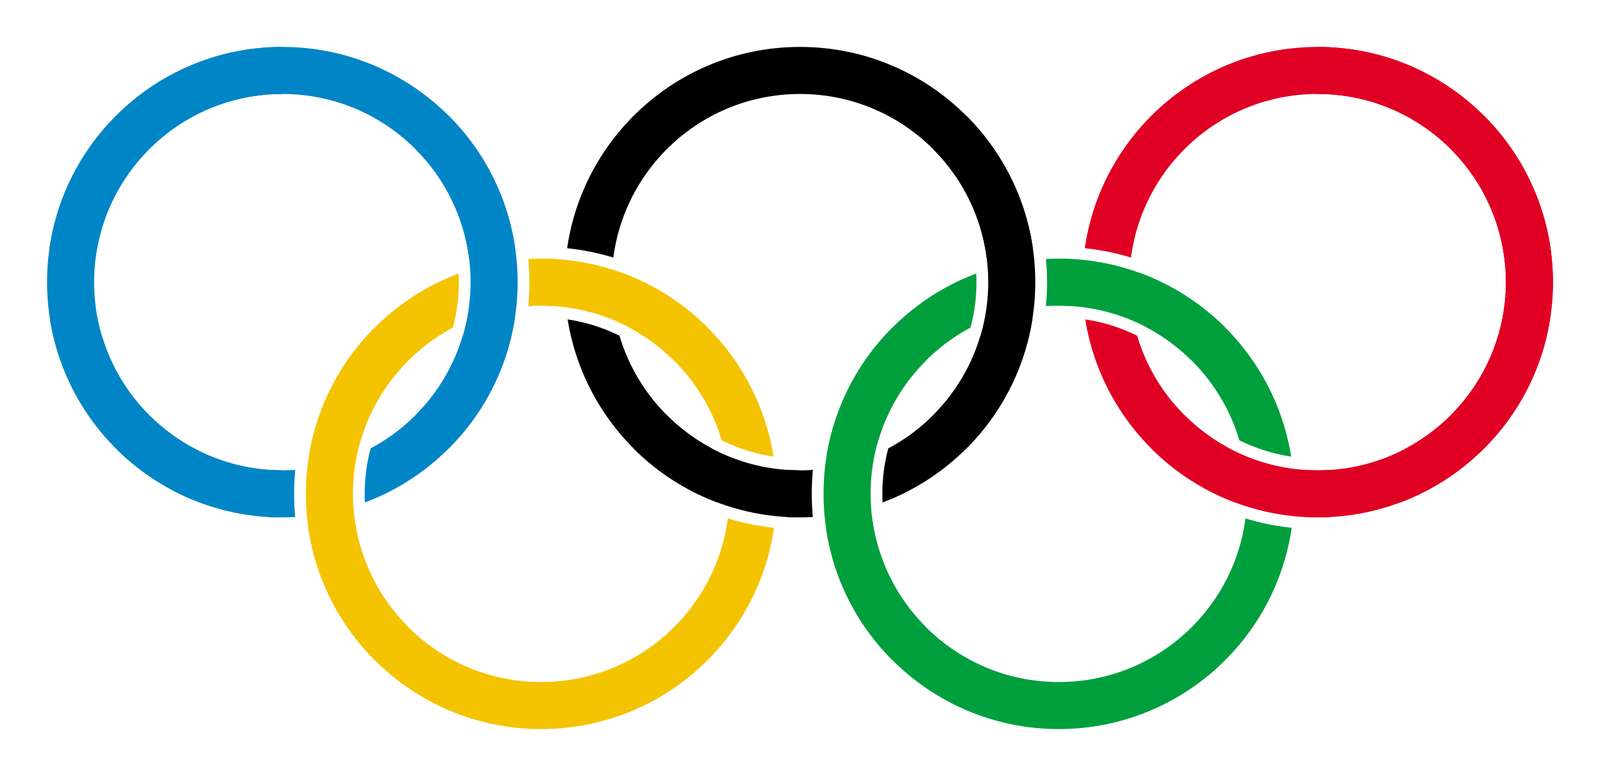 オリンピック 写真からオンラインパズル